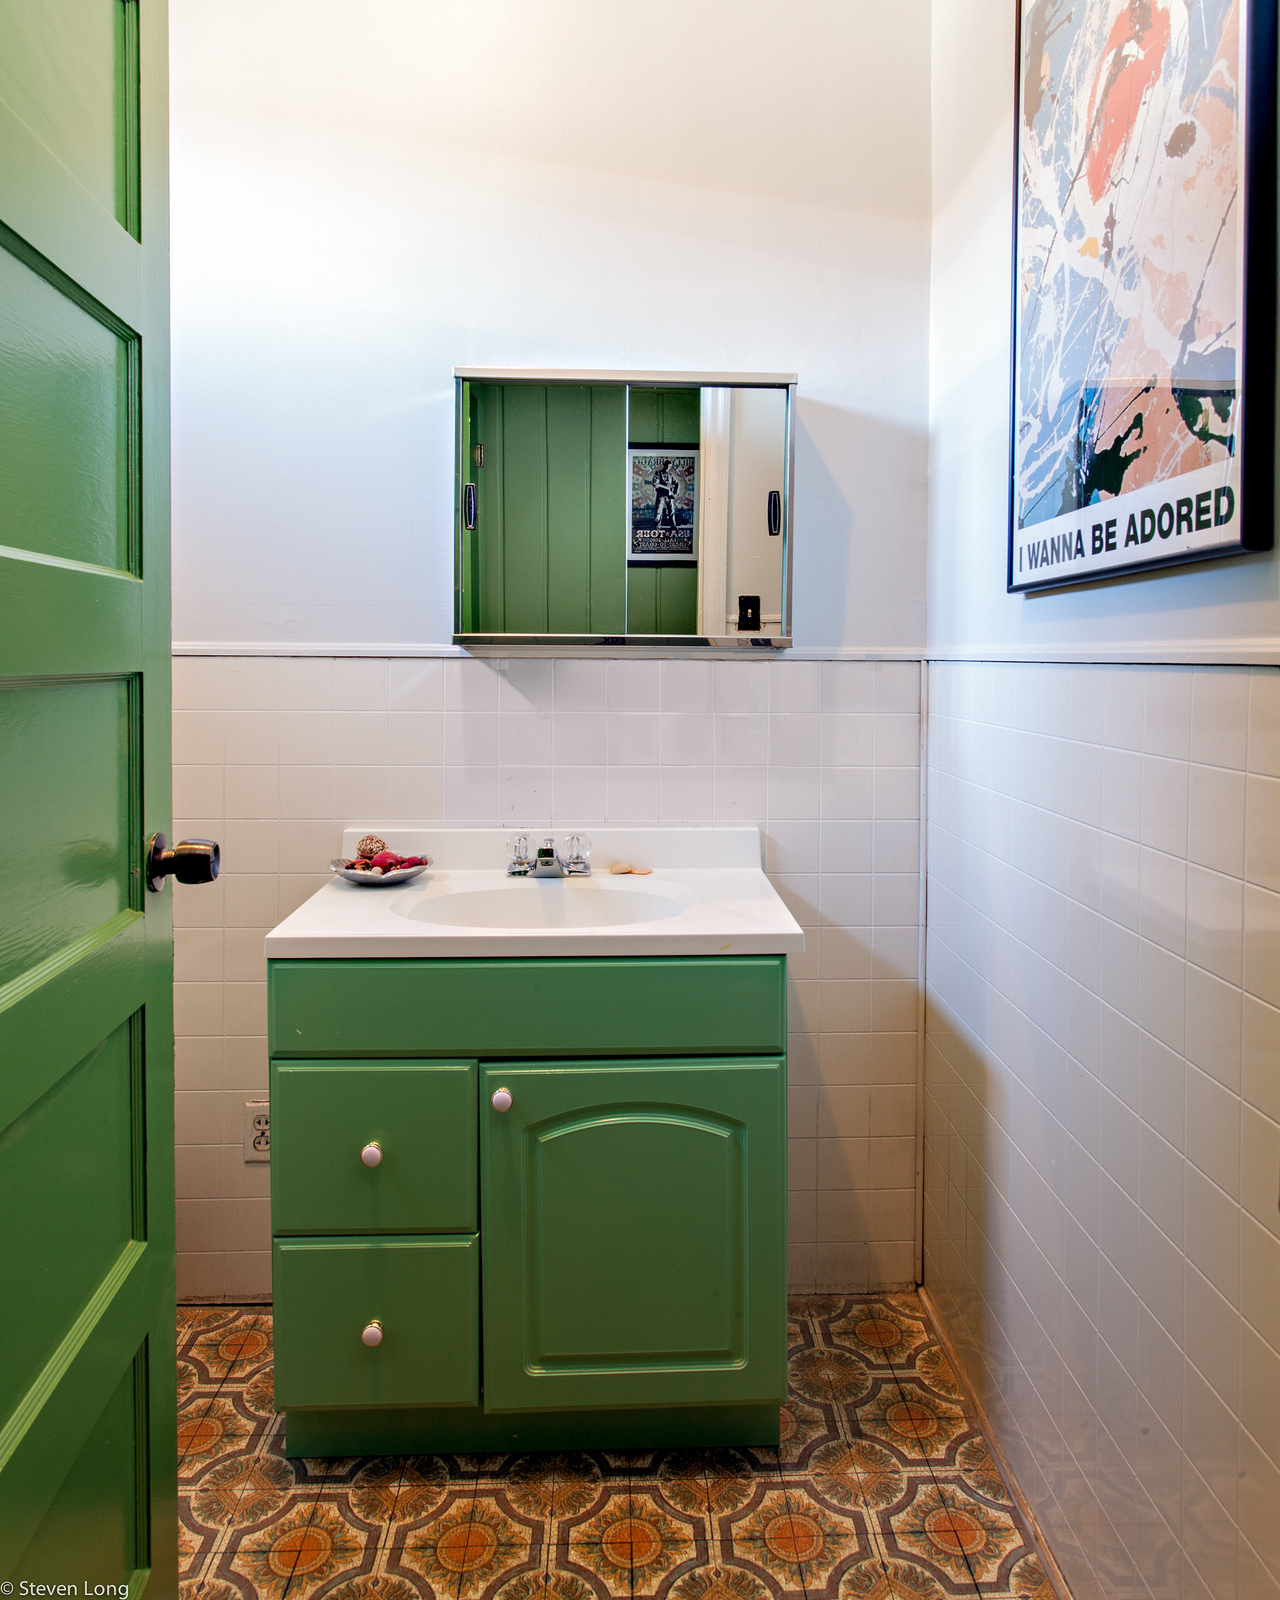 Vintage Bathroom With Artistic Floor Tiles And Vintage Bathtub